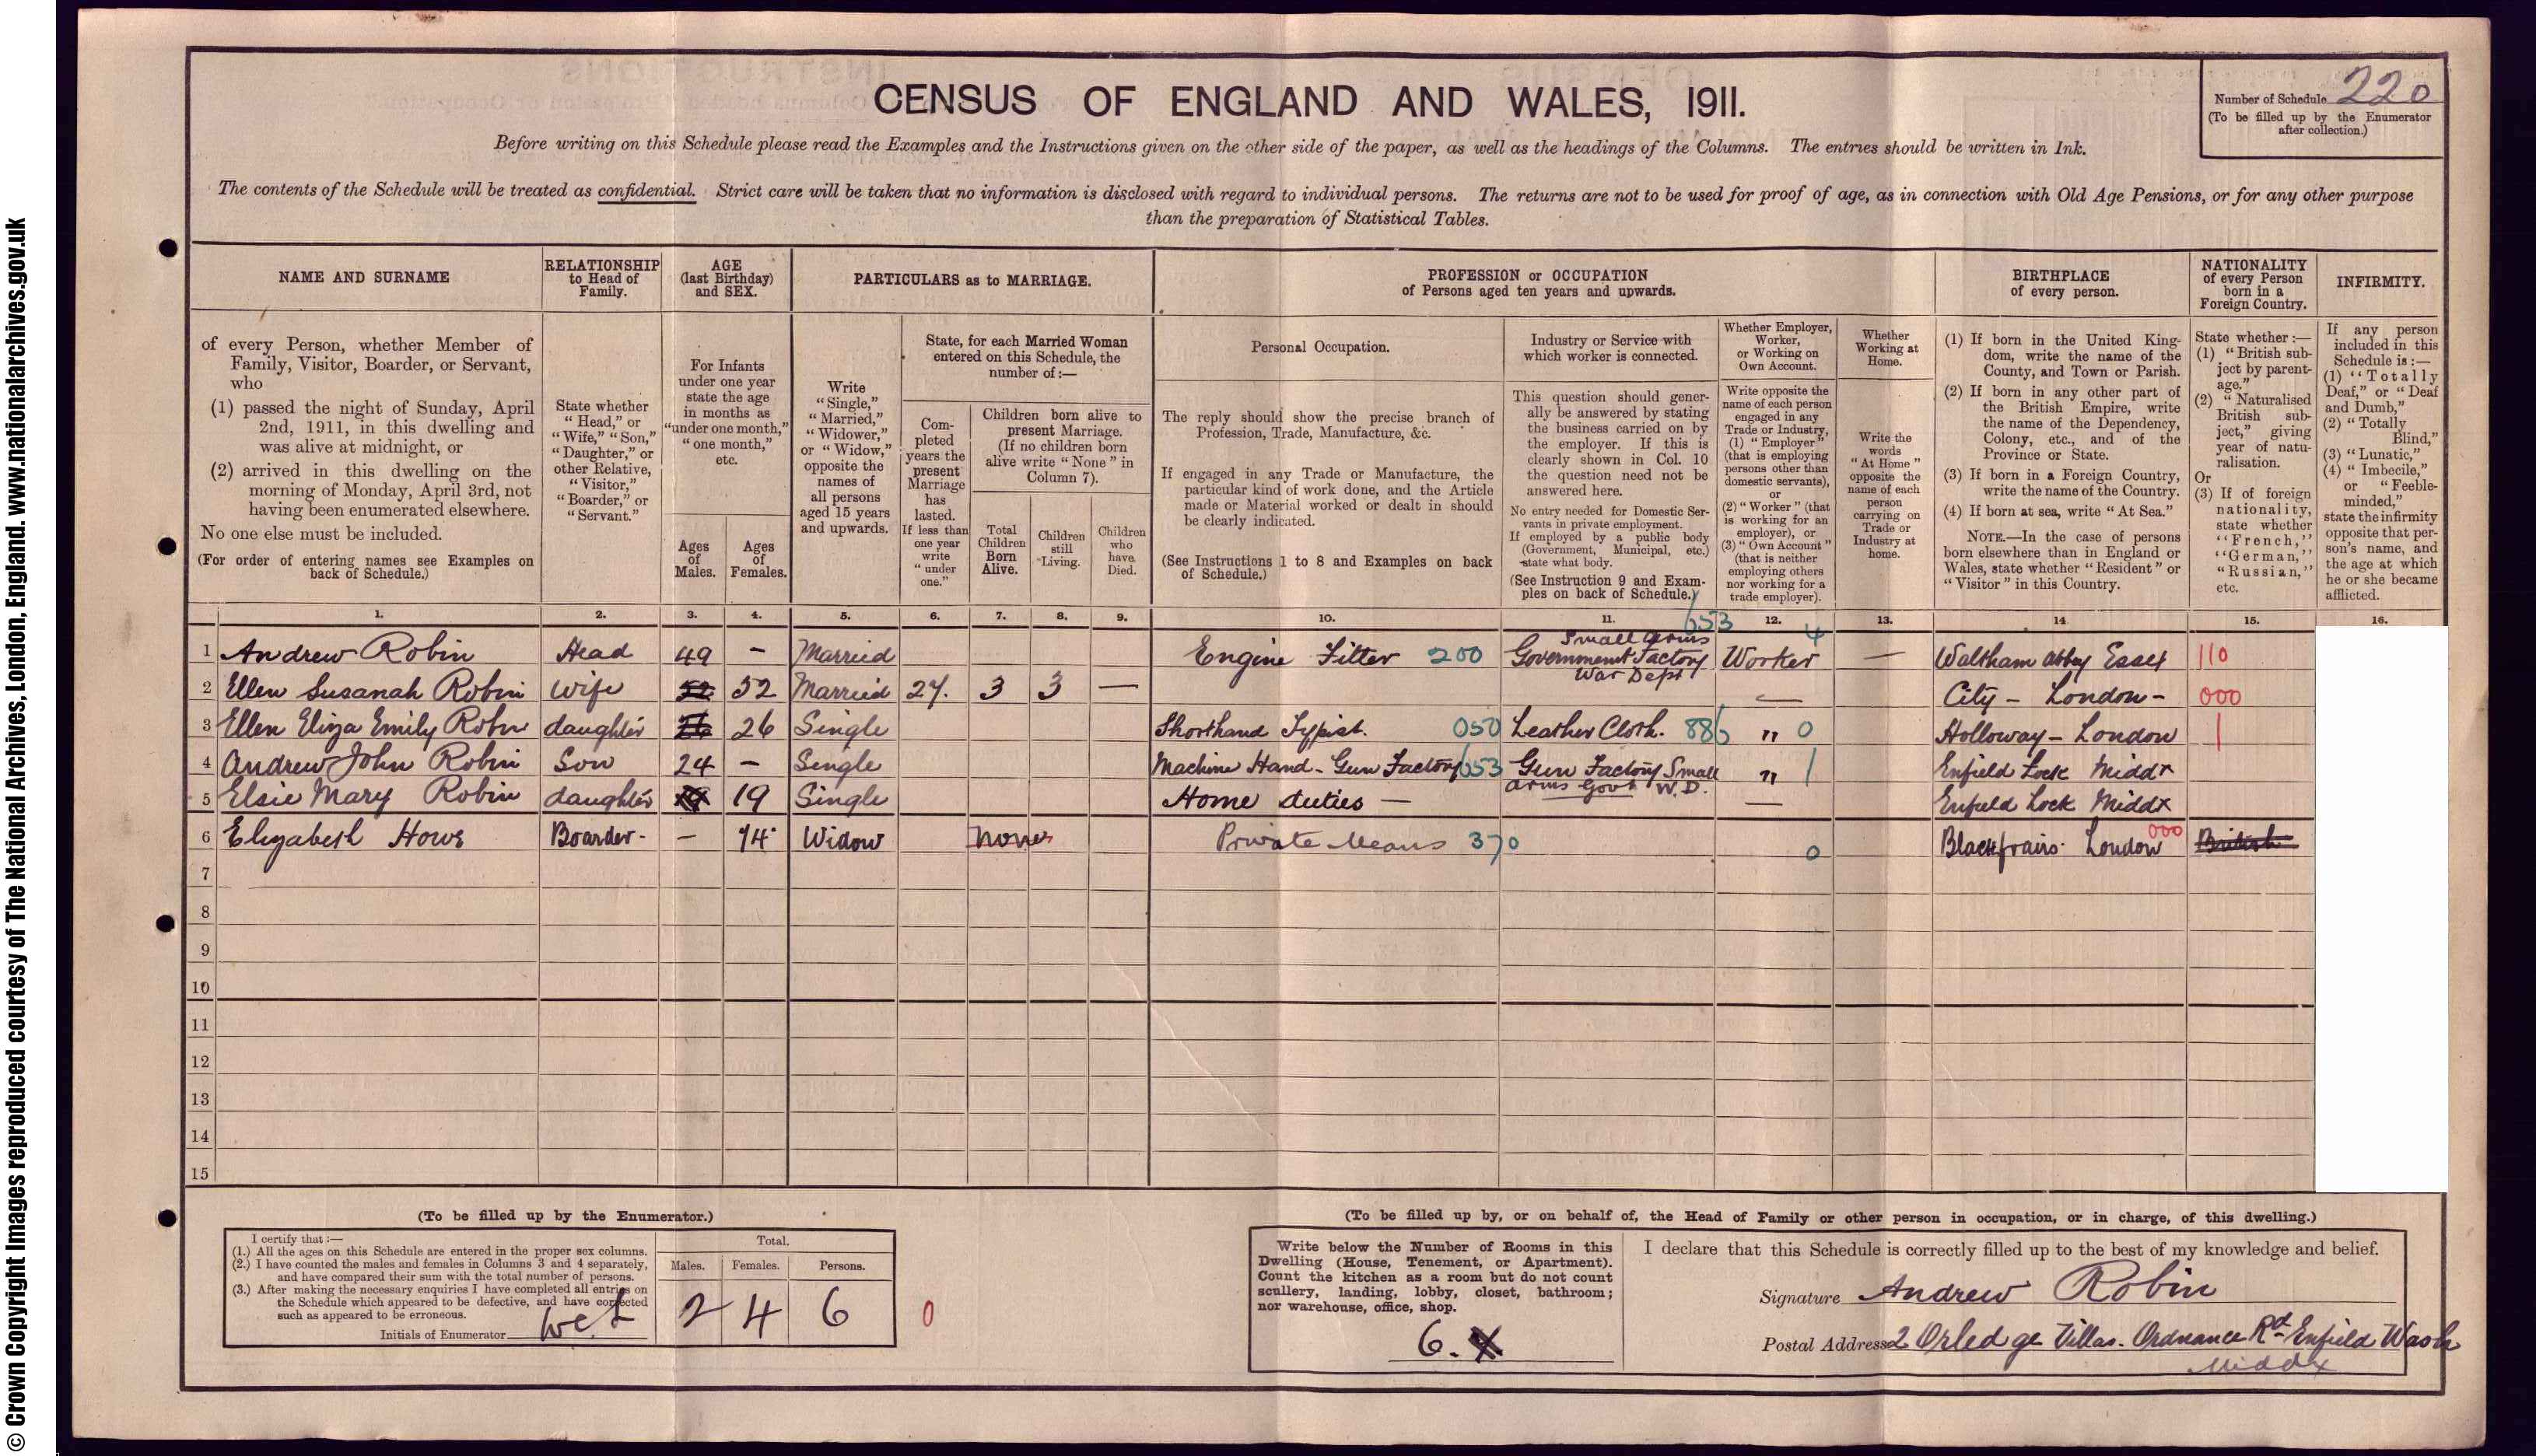 1911: 2  Aldrige Villa, Ordnance Road, Enfield Wash, Middlesex